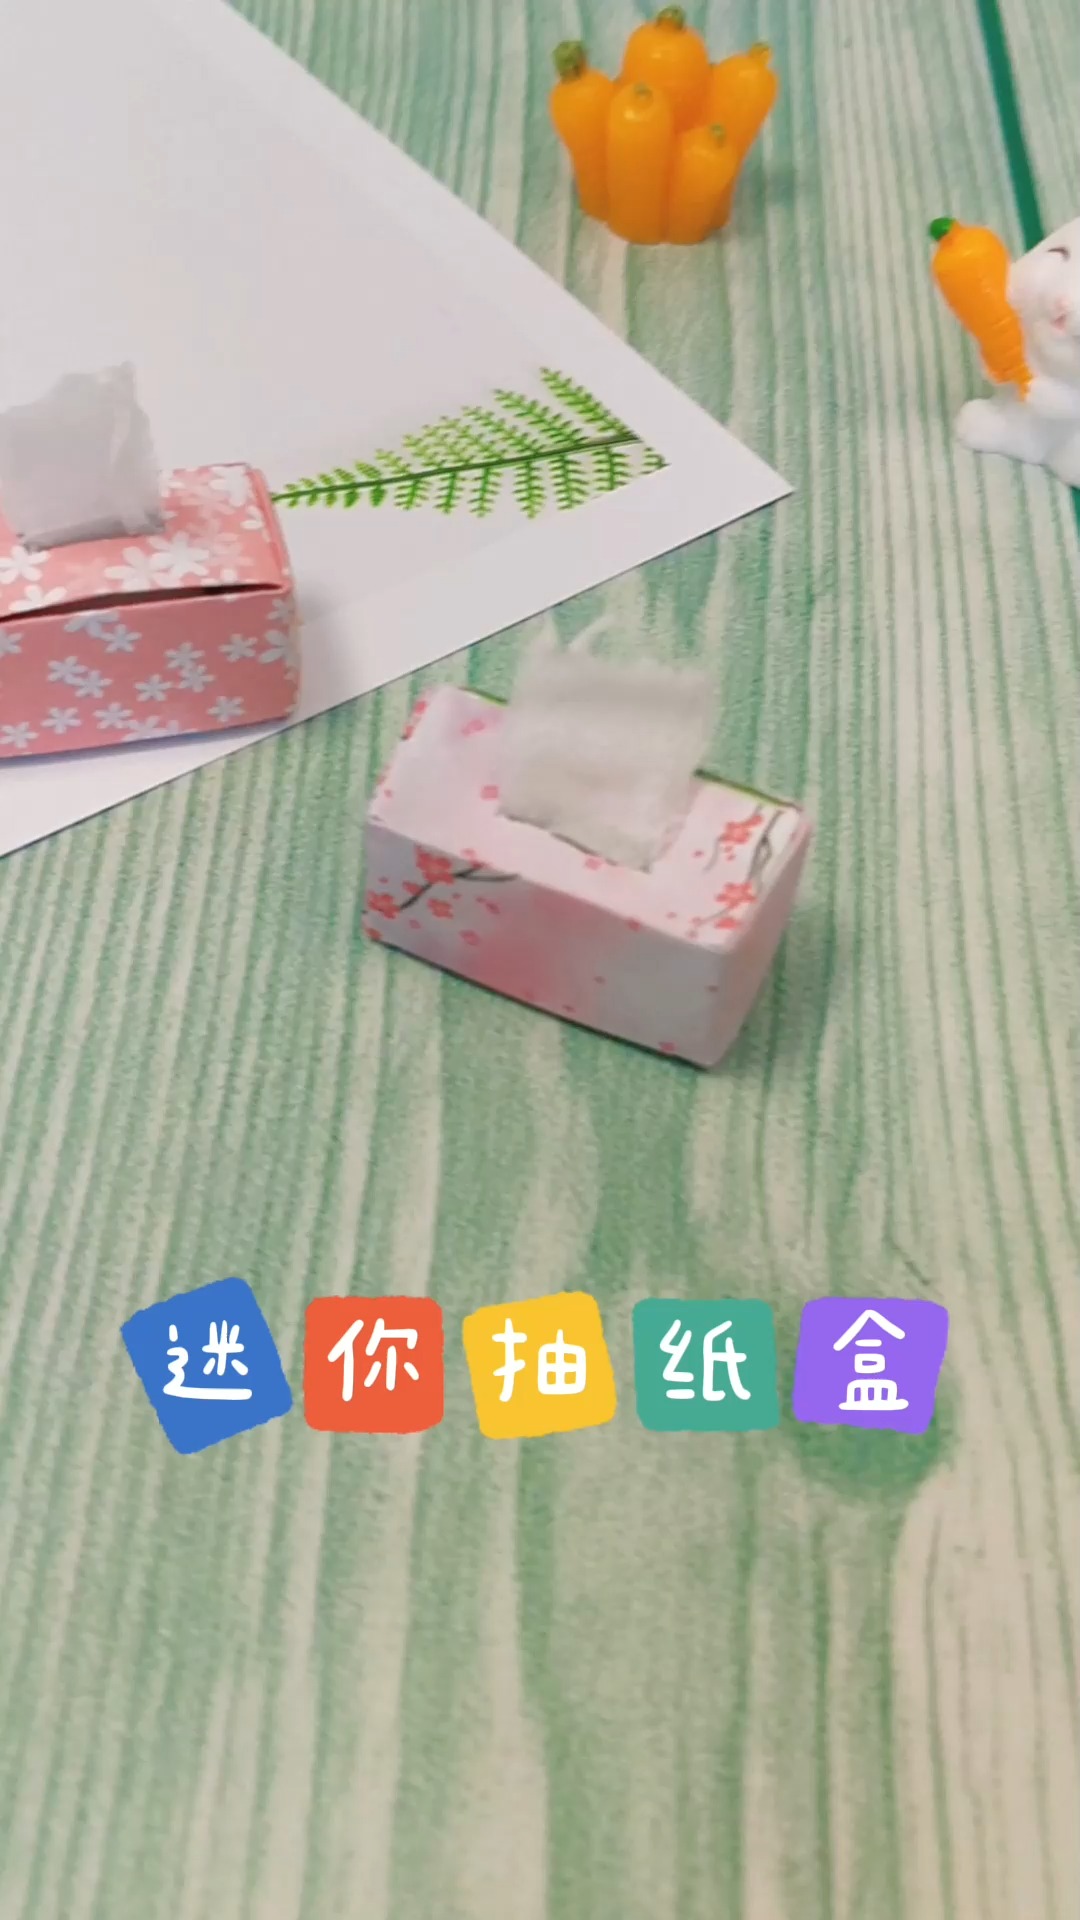 手工制作步骤超级简单的迷你抽纸盒做法很简单小朋友也能学会手工折纸